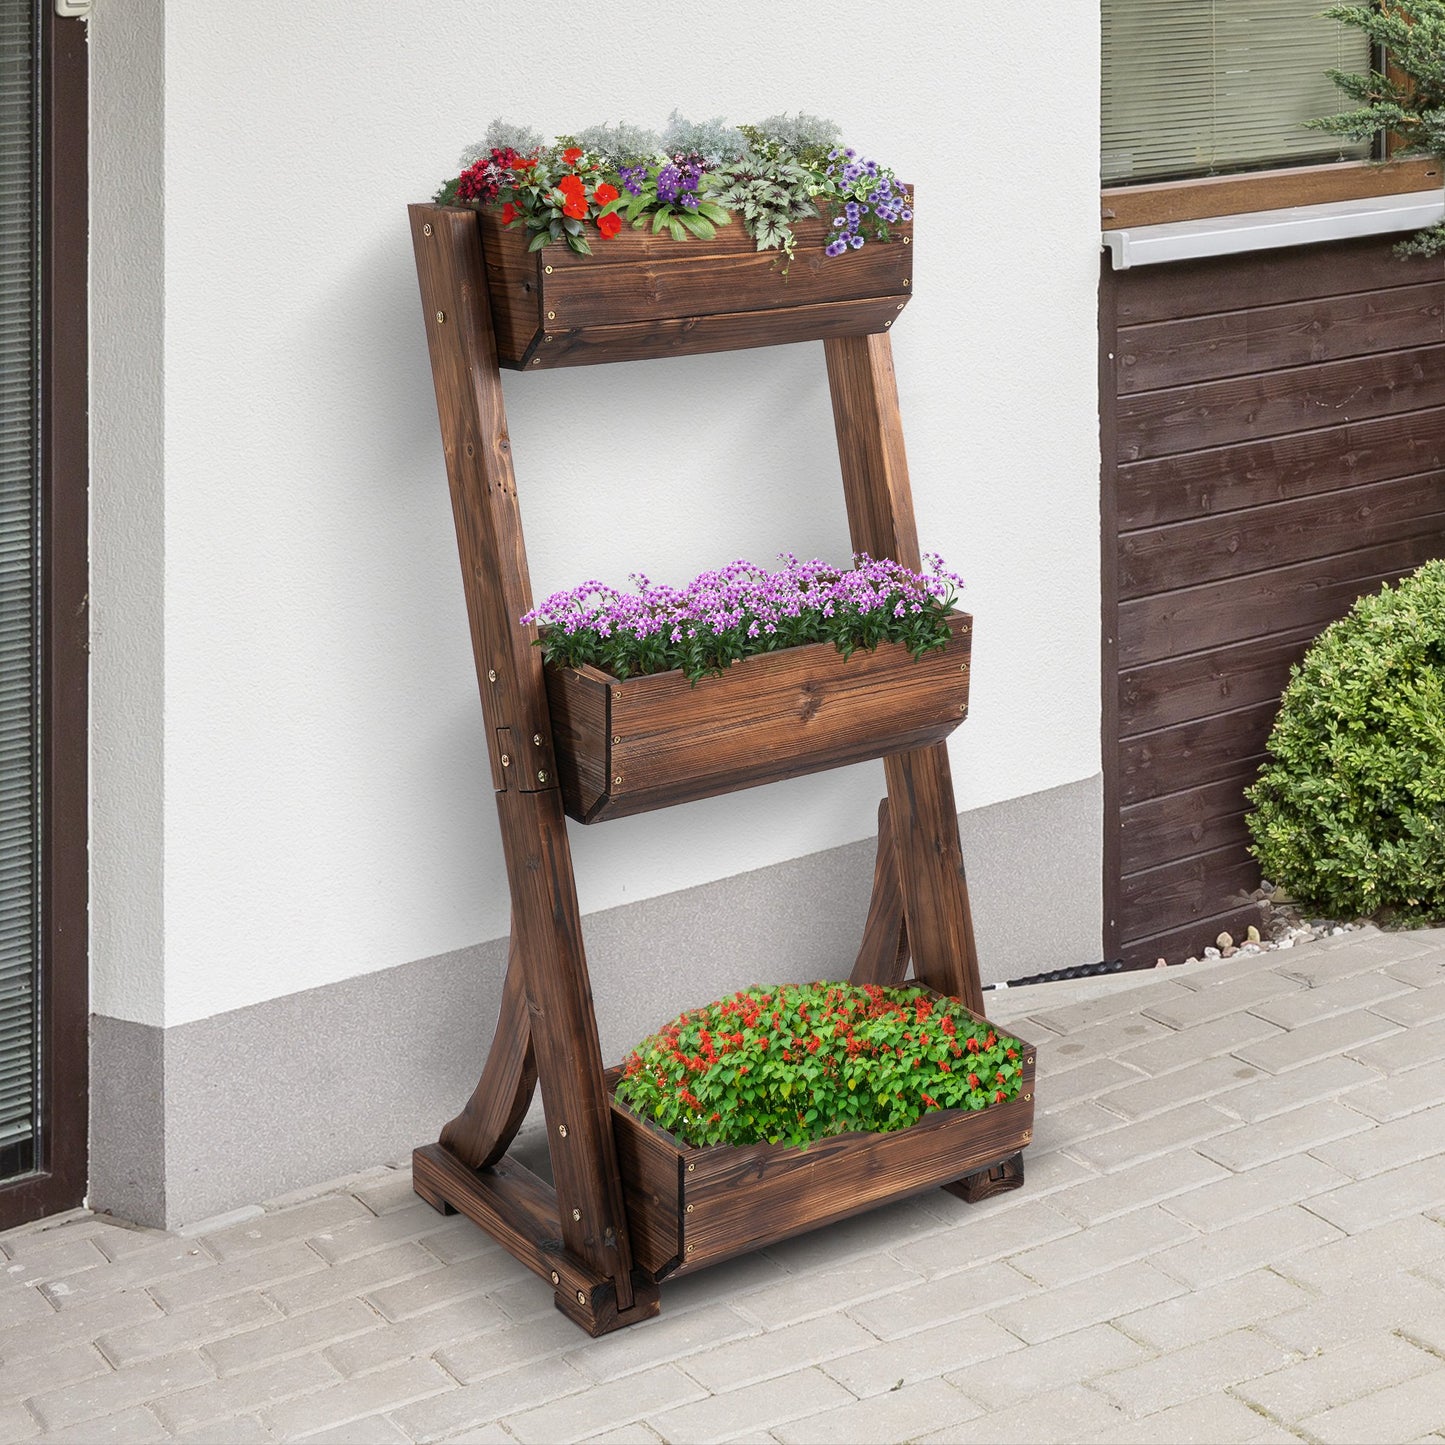 Outsunny 3-Tier Raised Garden Bed Freestanding Outdoor Vertical Wooden Flower Rack